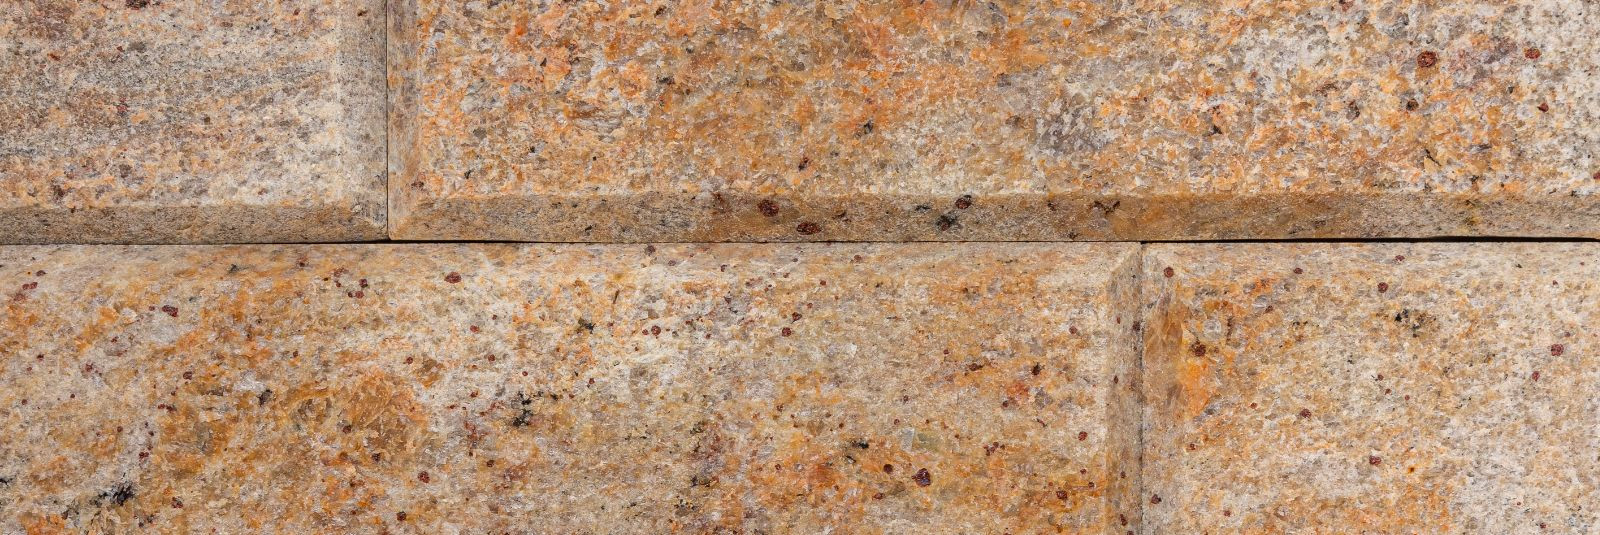 Kui räägitakse ehitusmaterjalidest, mis ühendavad endas vastupidavust ja elegantset välimust, ei saa mööda vaadata graniidist. Graniitkivi on looduslik materjal